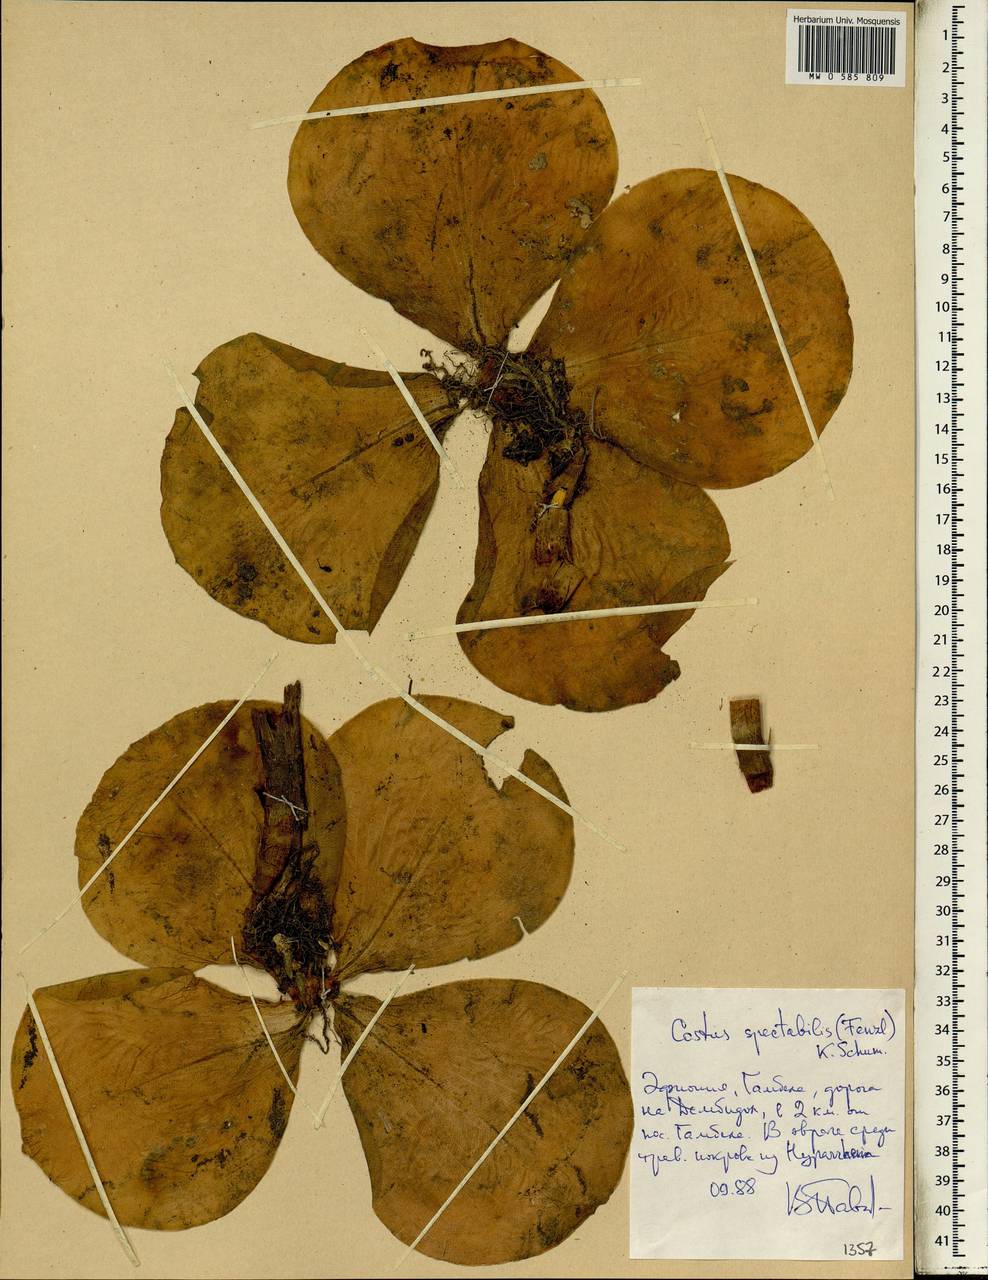 Costus spectabilis (Fenzl) K.Schum., Africa (AFR) (Ethiopia)